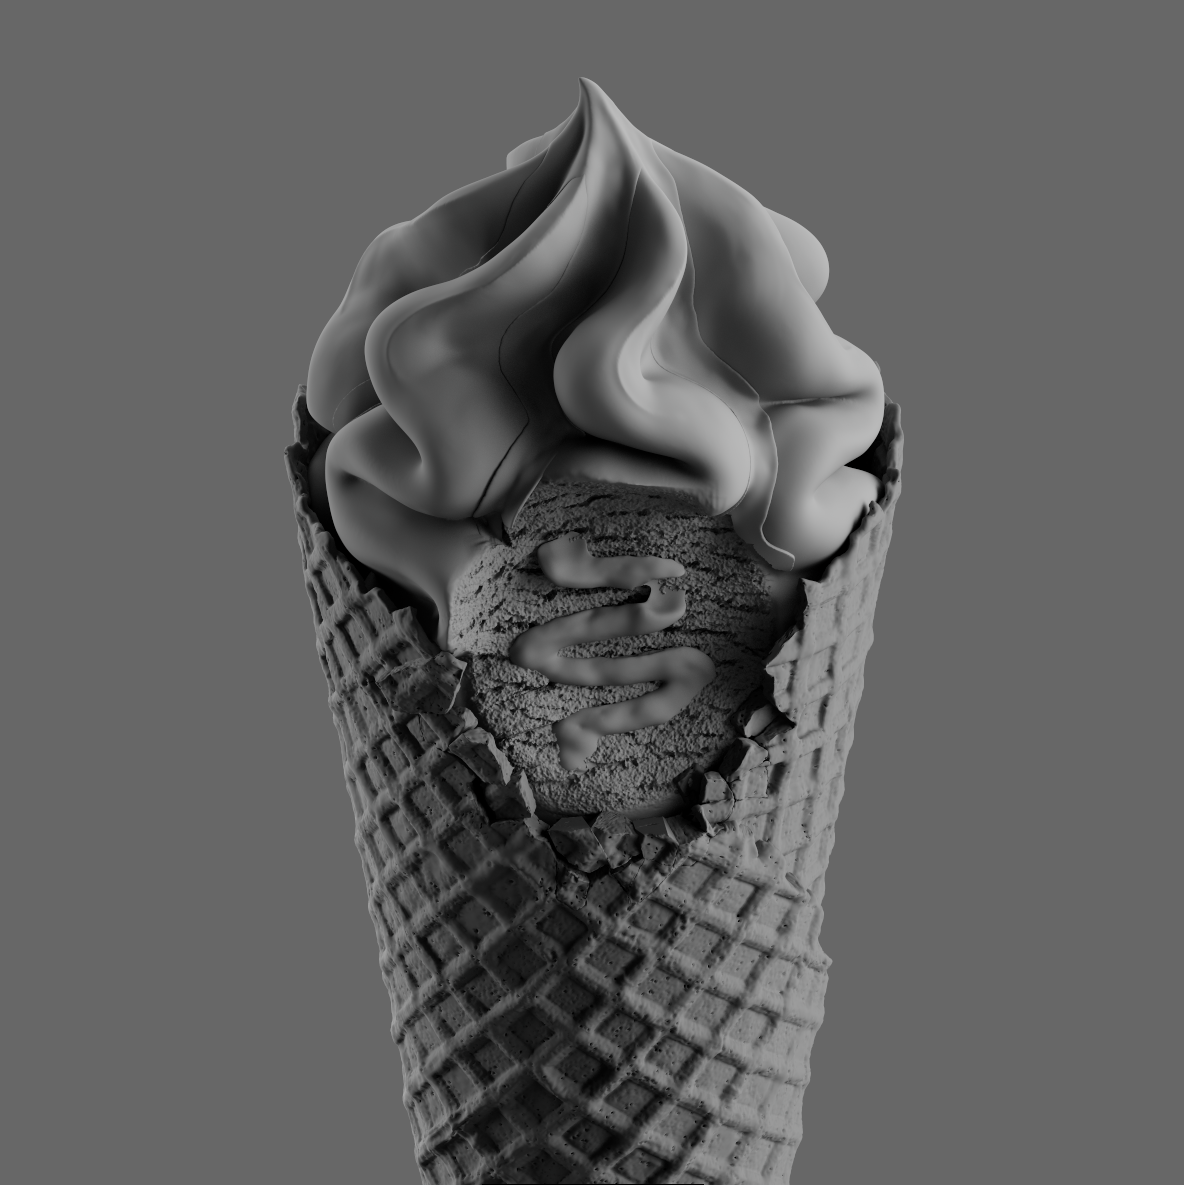 ice cream cone Packaging Graphic Designer cinema 4d design poster ILLUSTRATION 